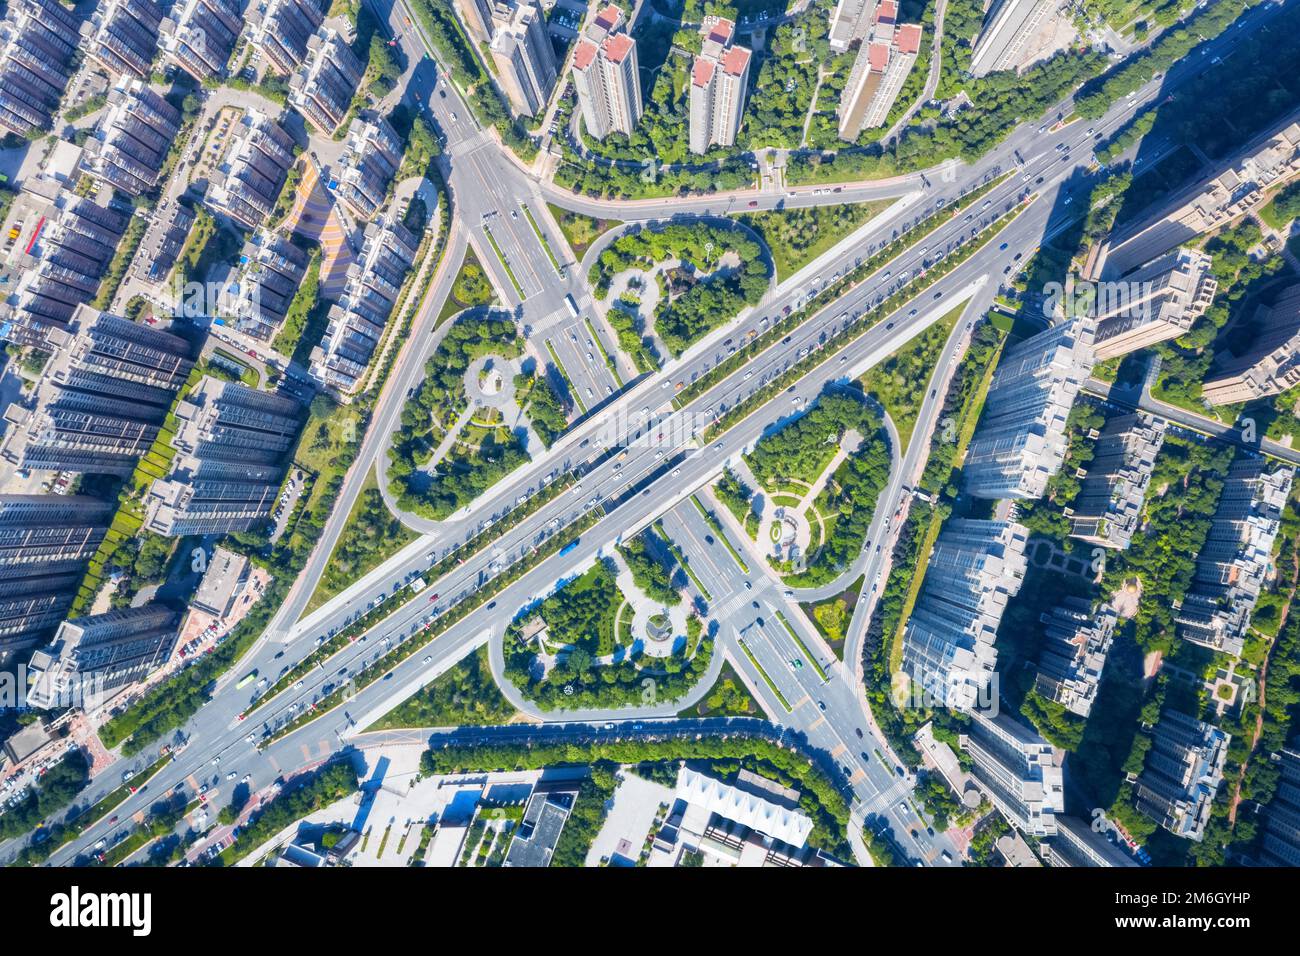 Vue aérienne de l'échangeur de la ville de Xi'an Banque D'Images